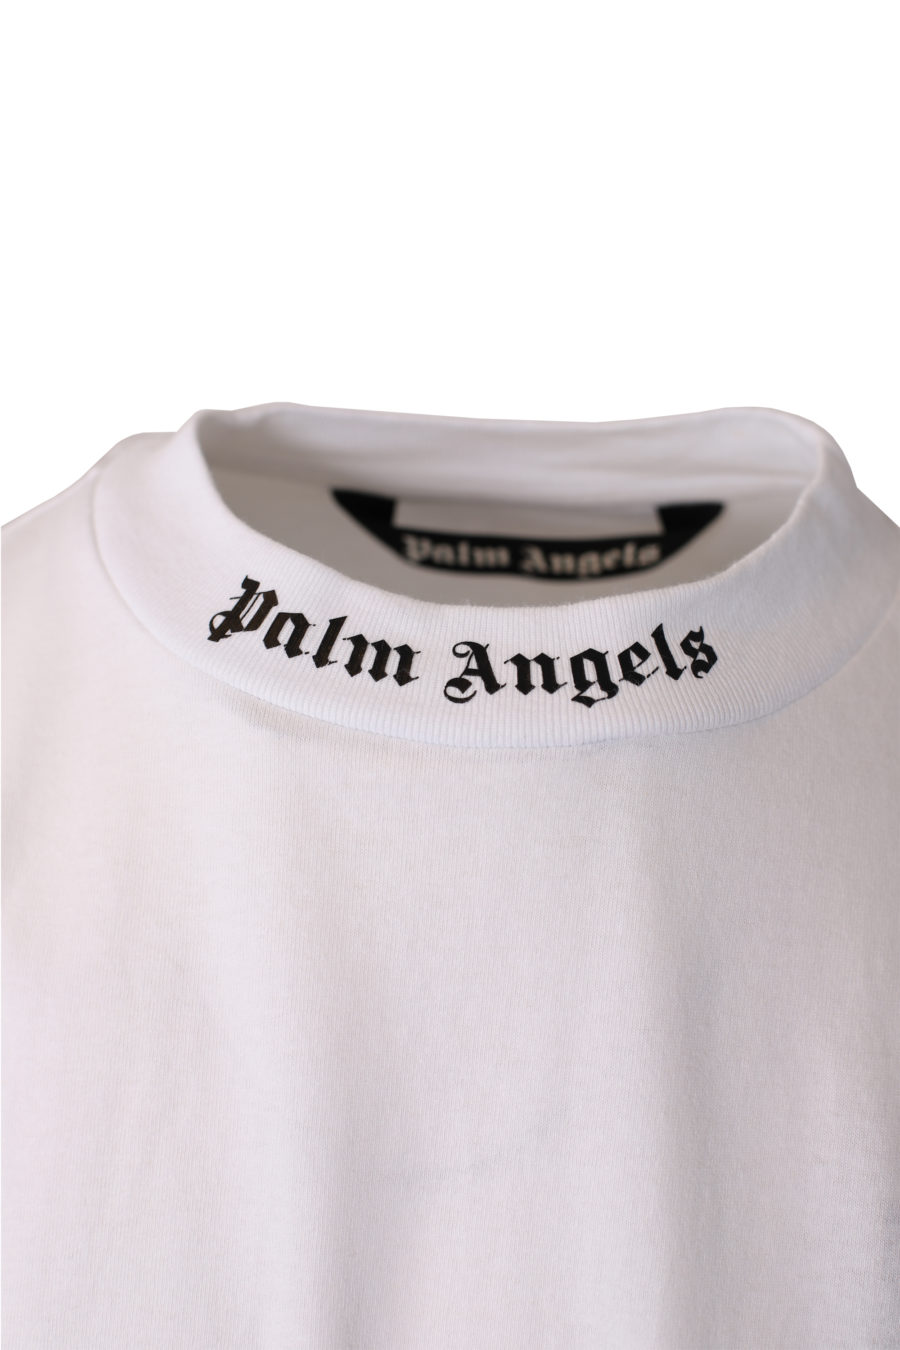 T-shirt blanc oversize avec logo sur le col - IMG 1046